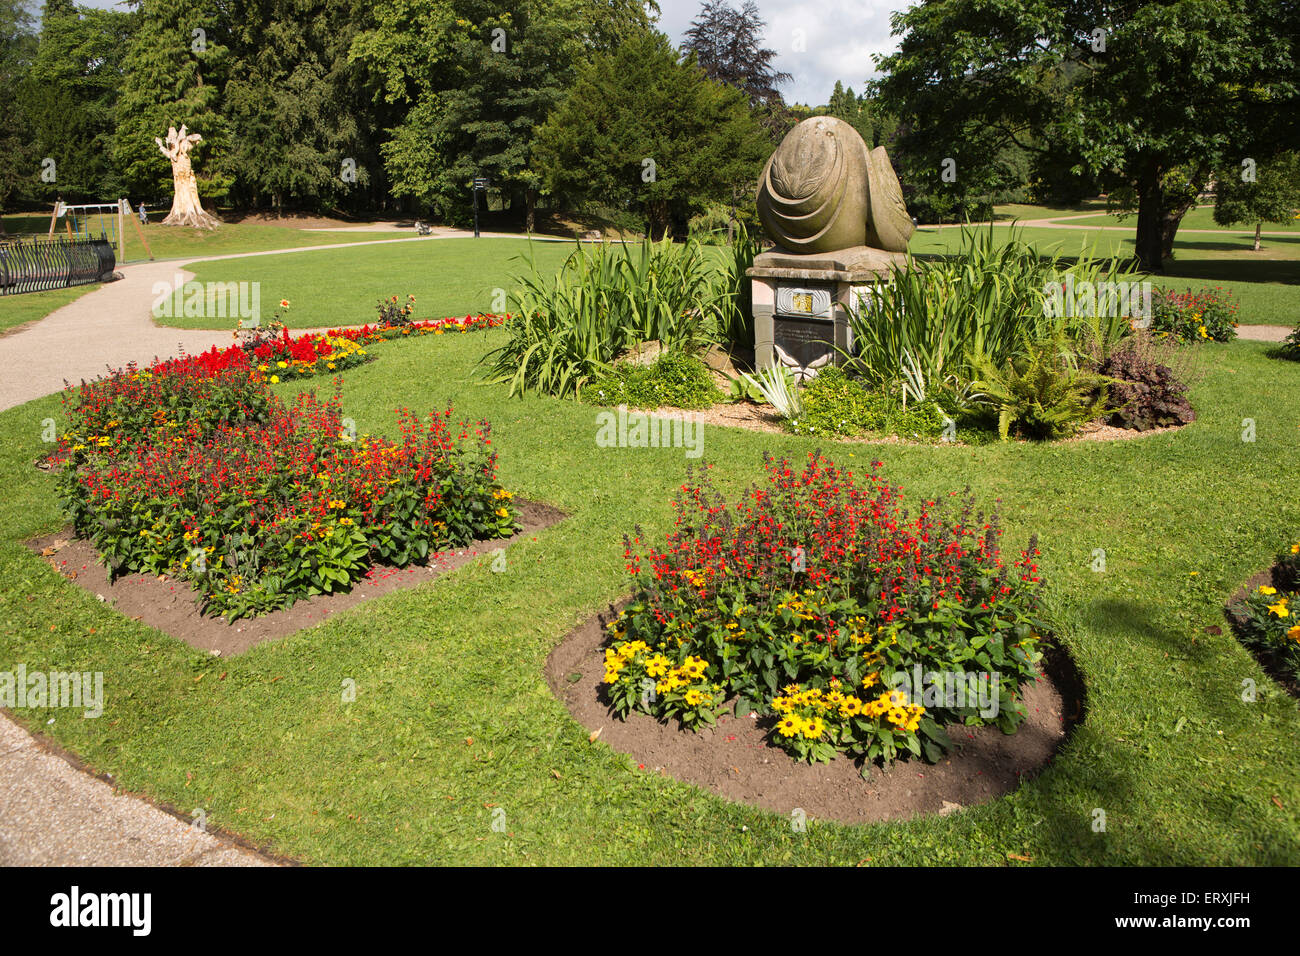 Royaume-uni, Angleterre, Derbyshire, Buxton, Pavilion Gardens, Lew Mounsey memorial sculpture, par Sarah Brindley Banque D'Images